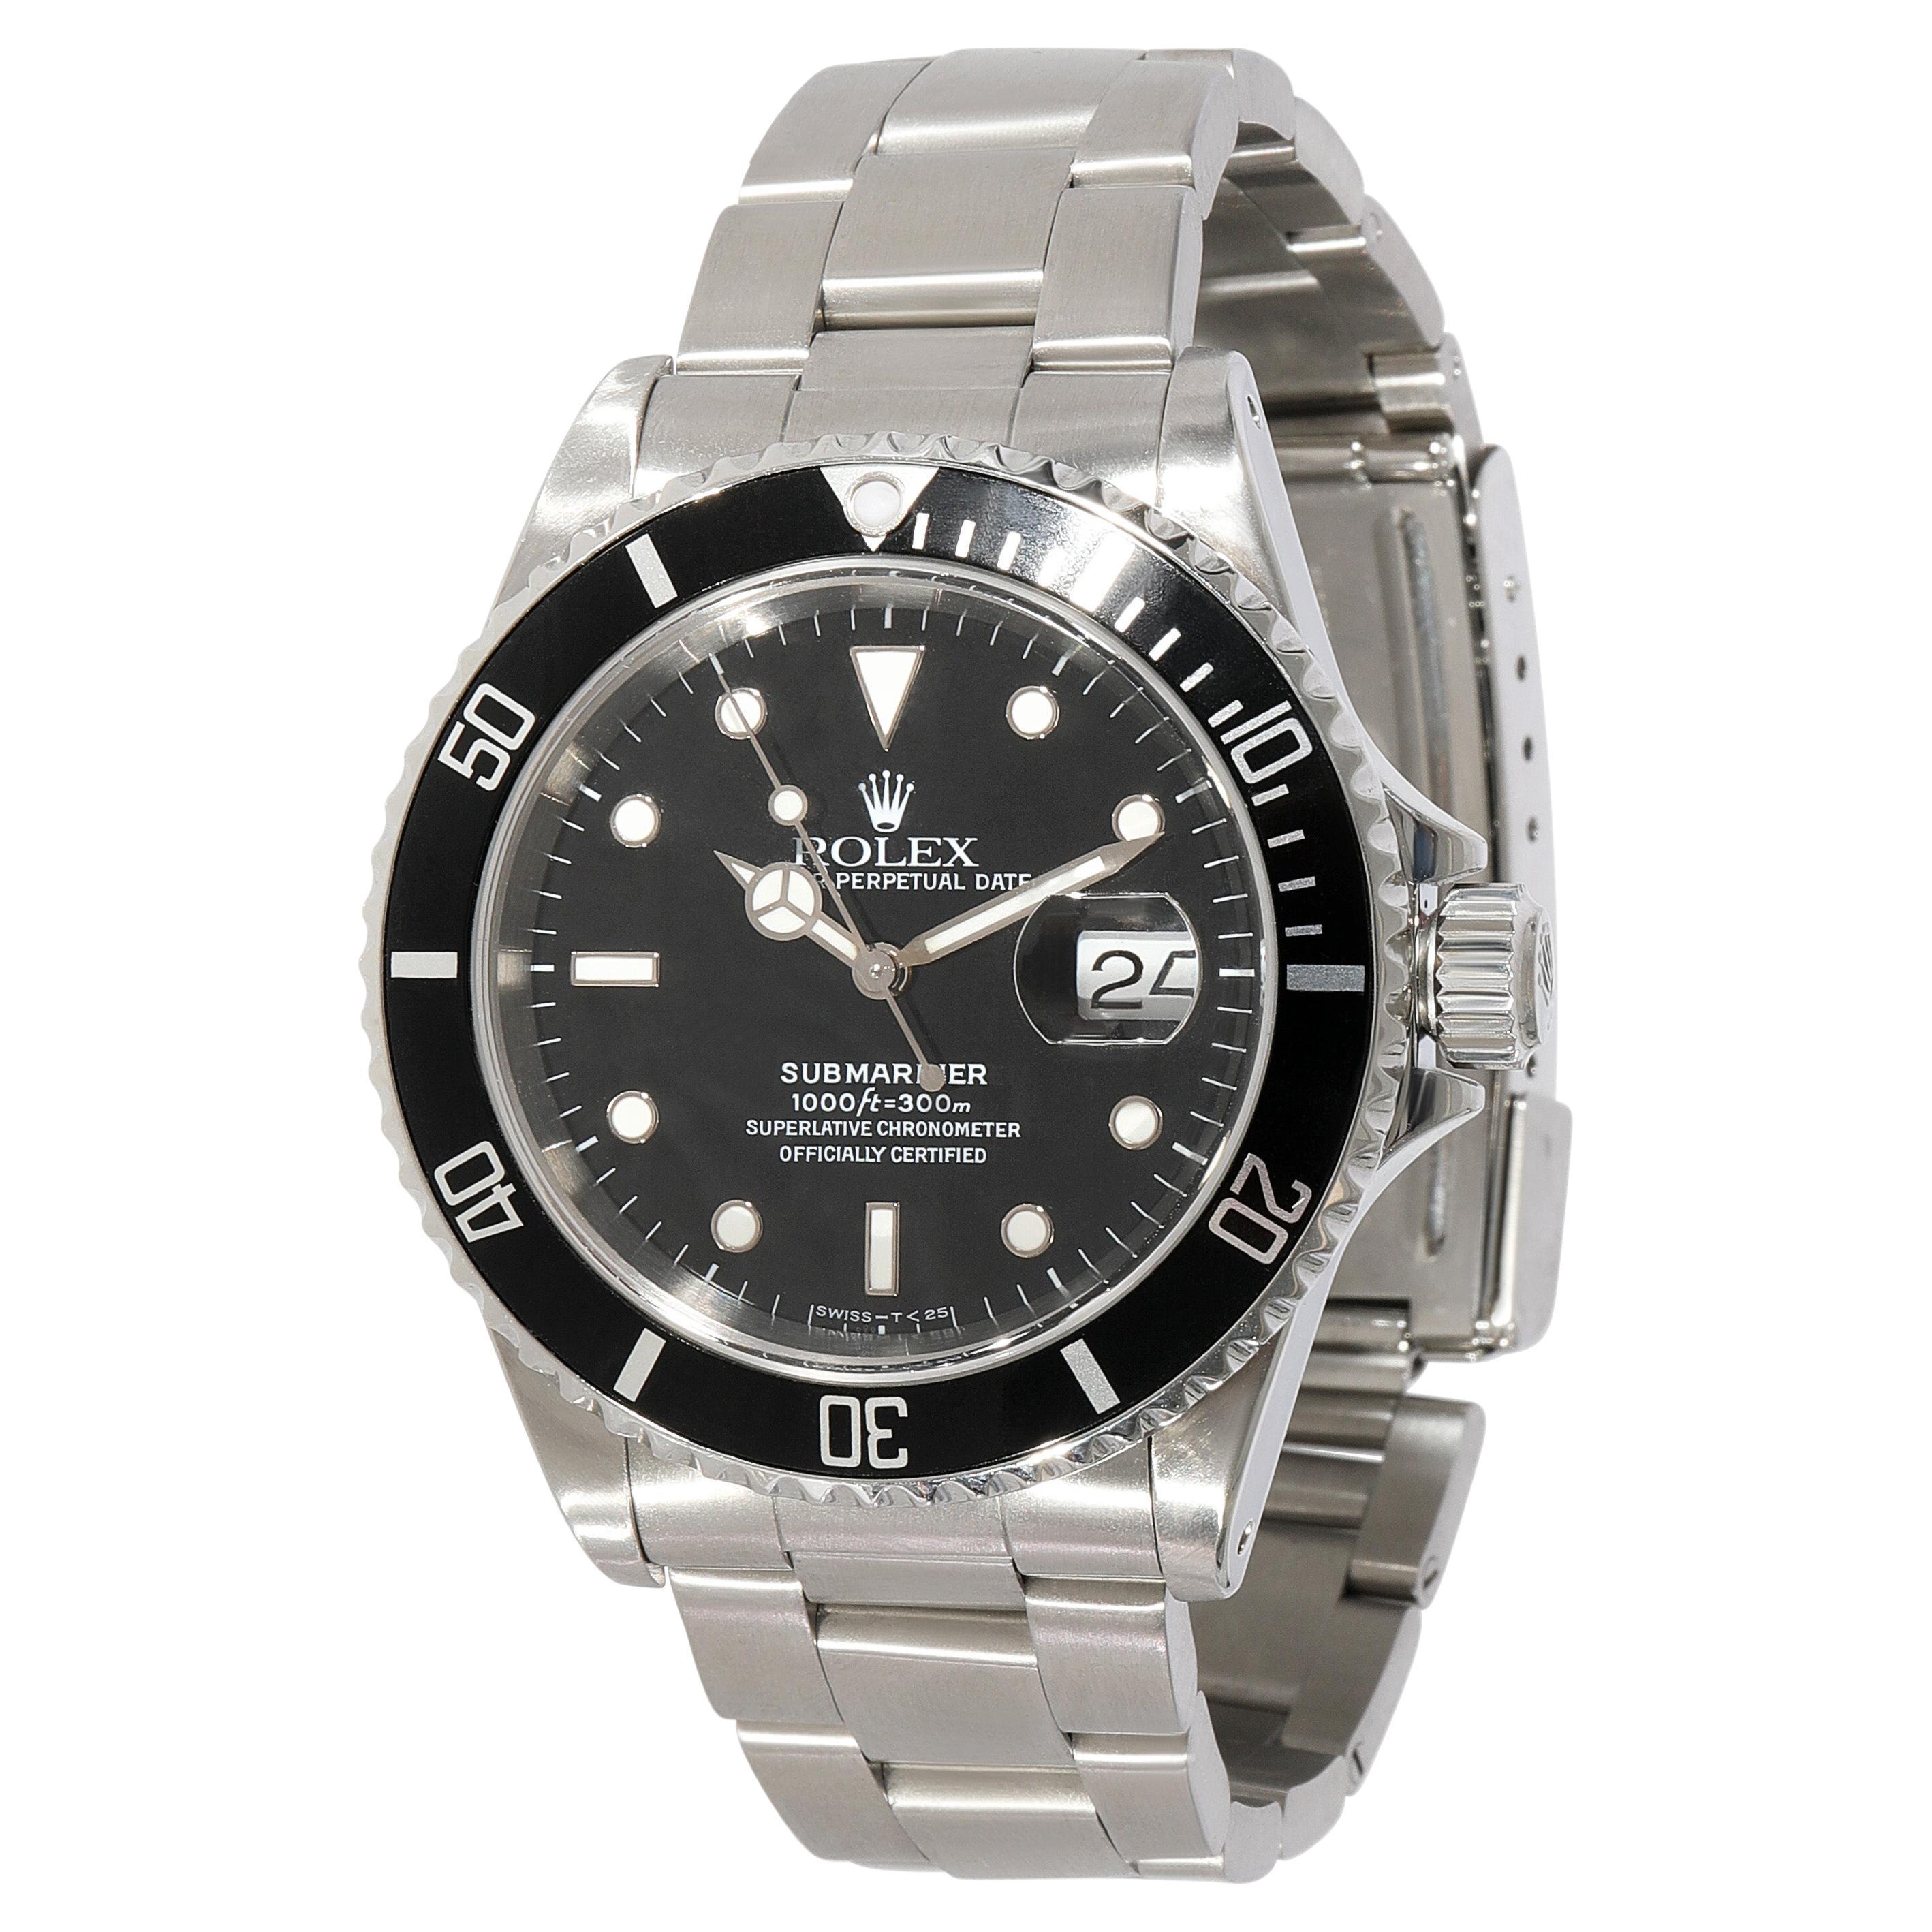 Rolex Submariner 16610 Men's Watch in Stainless Steel